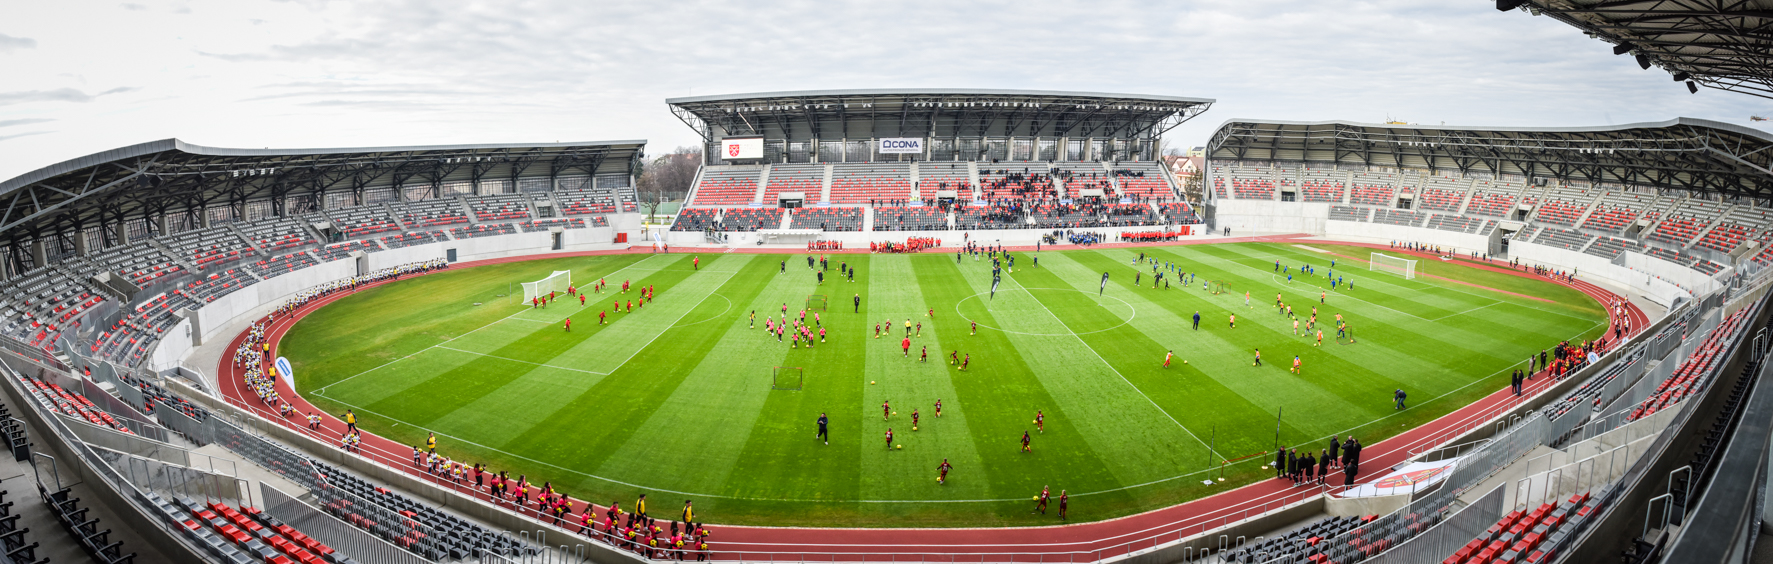 Sărbătoare mare: Noul Stadion Municipal a fost inaugurat. ”Sibiul este un oraș în care se trăiește frumos”